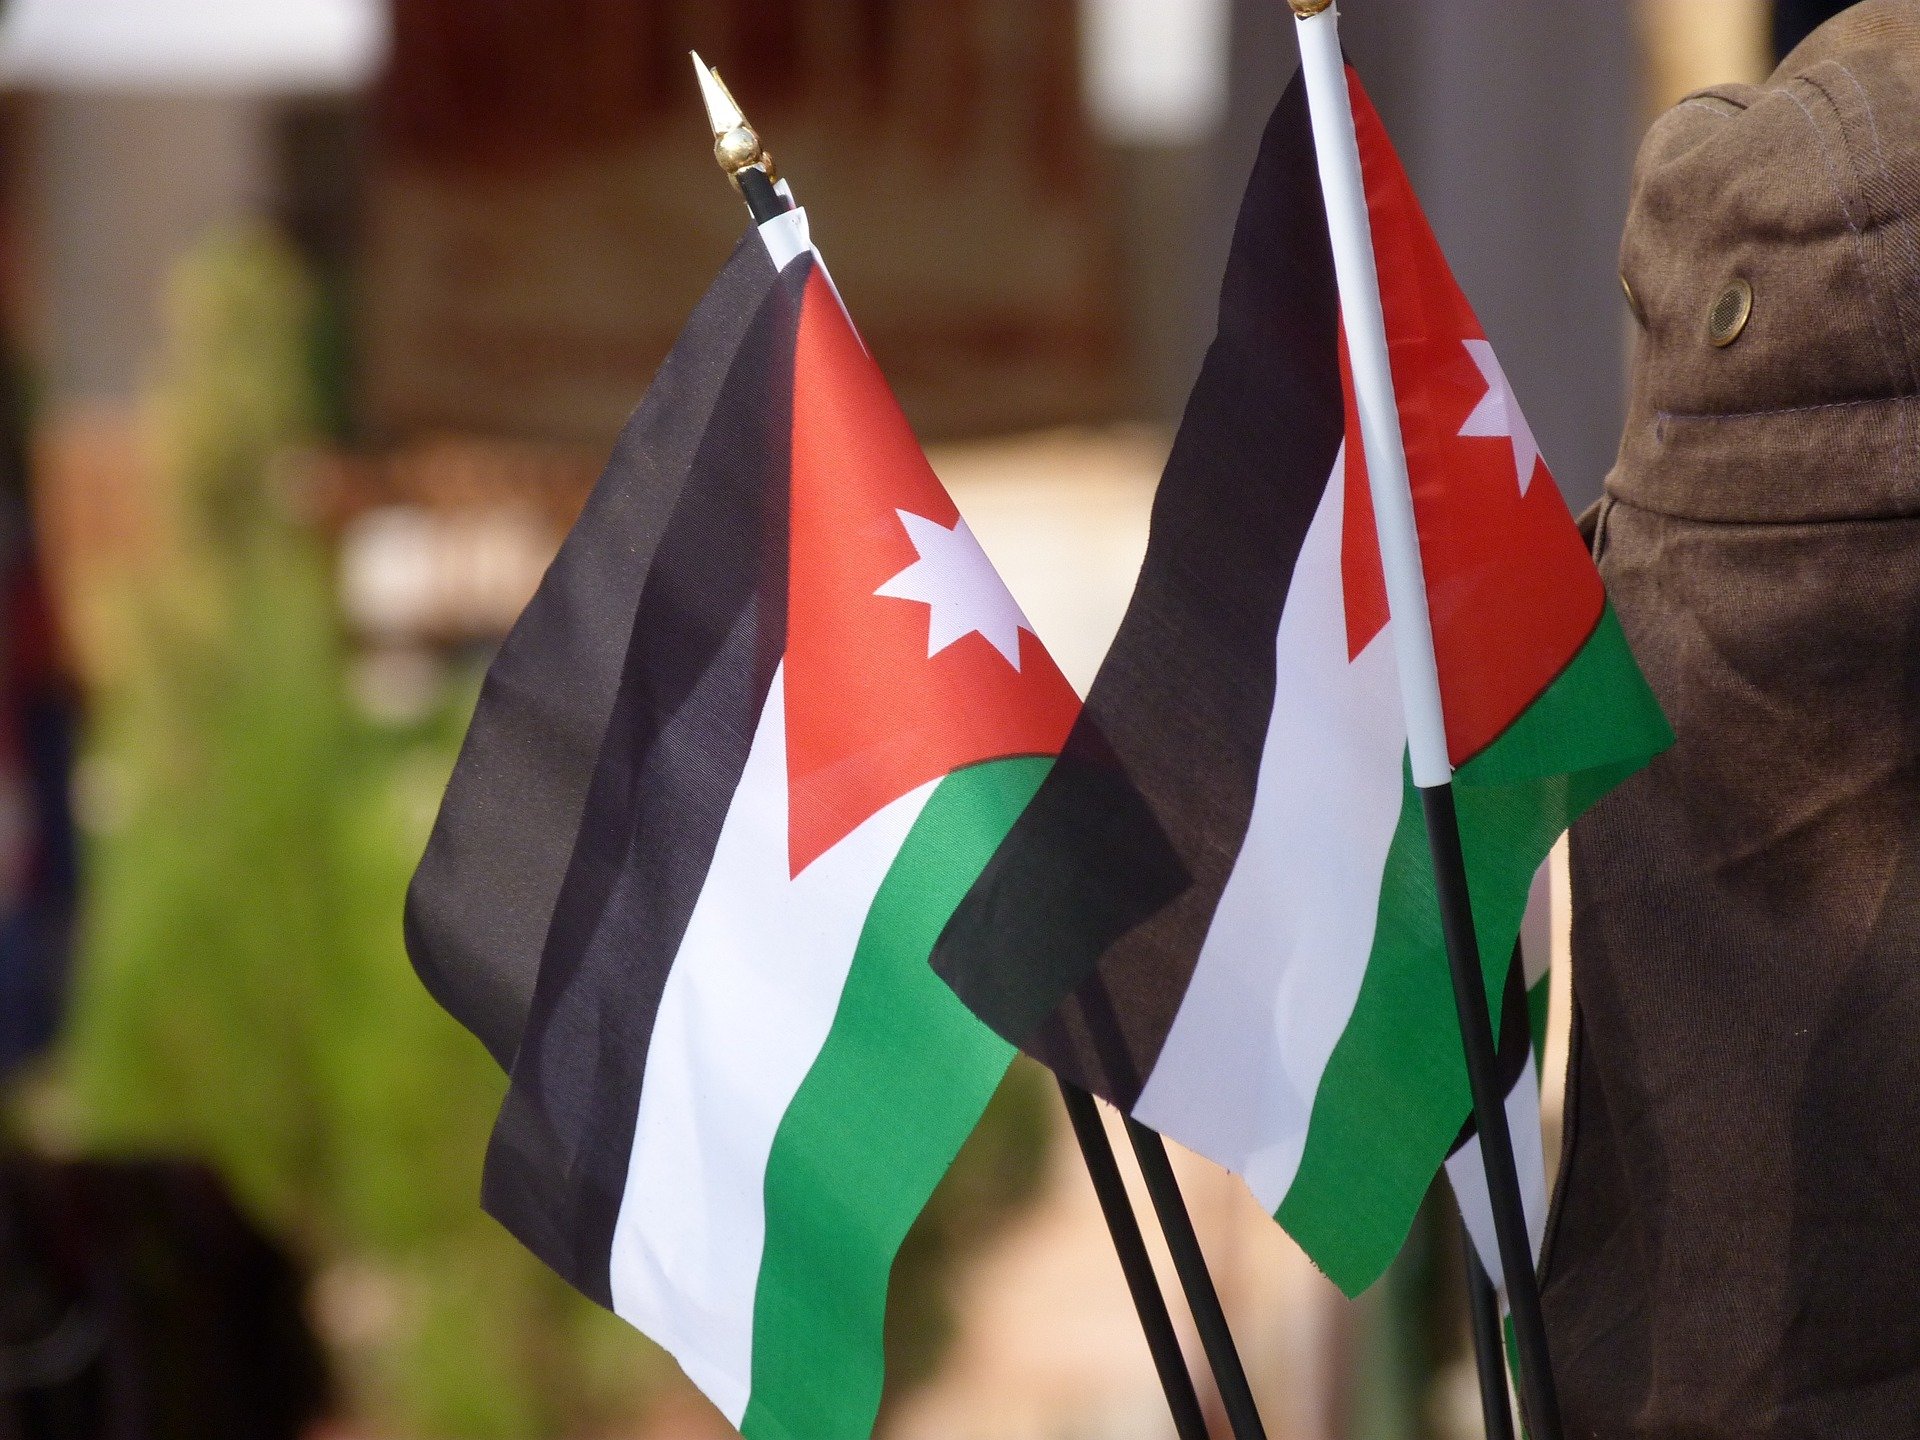 България открива почетно консулство в Йордания, реши Министерският съвет. За почетен